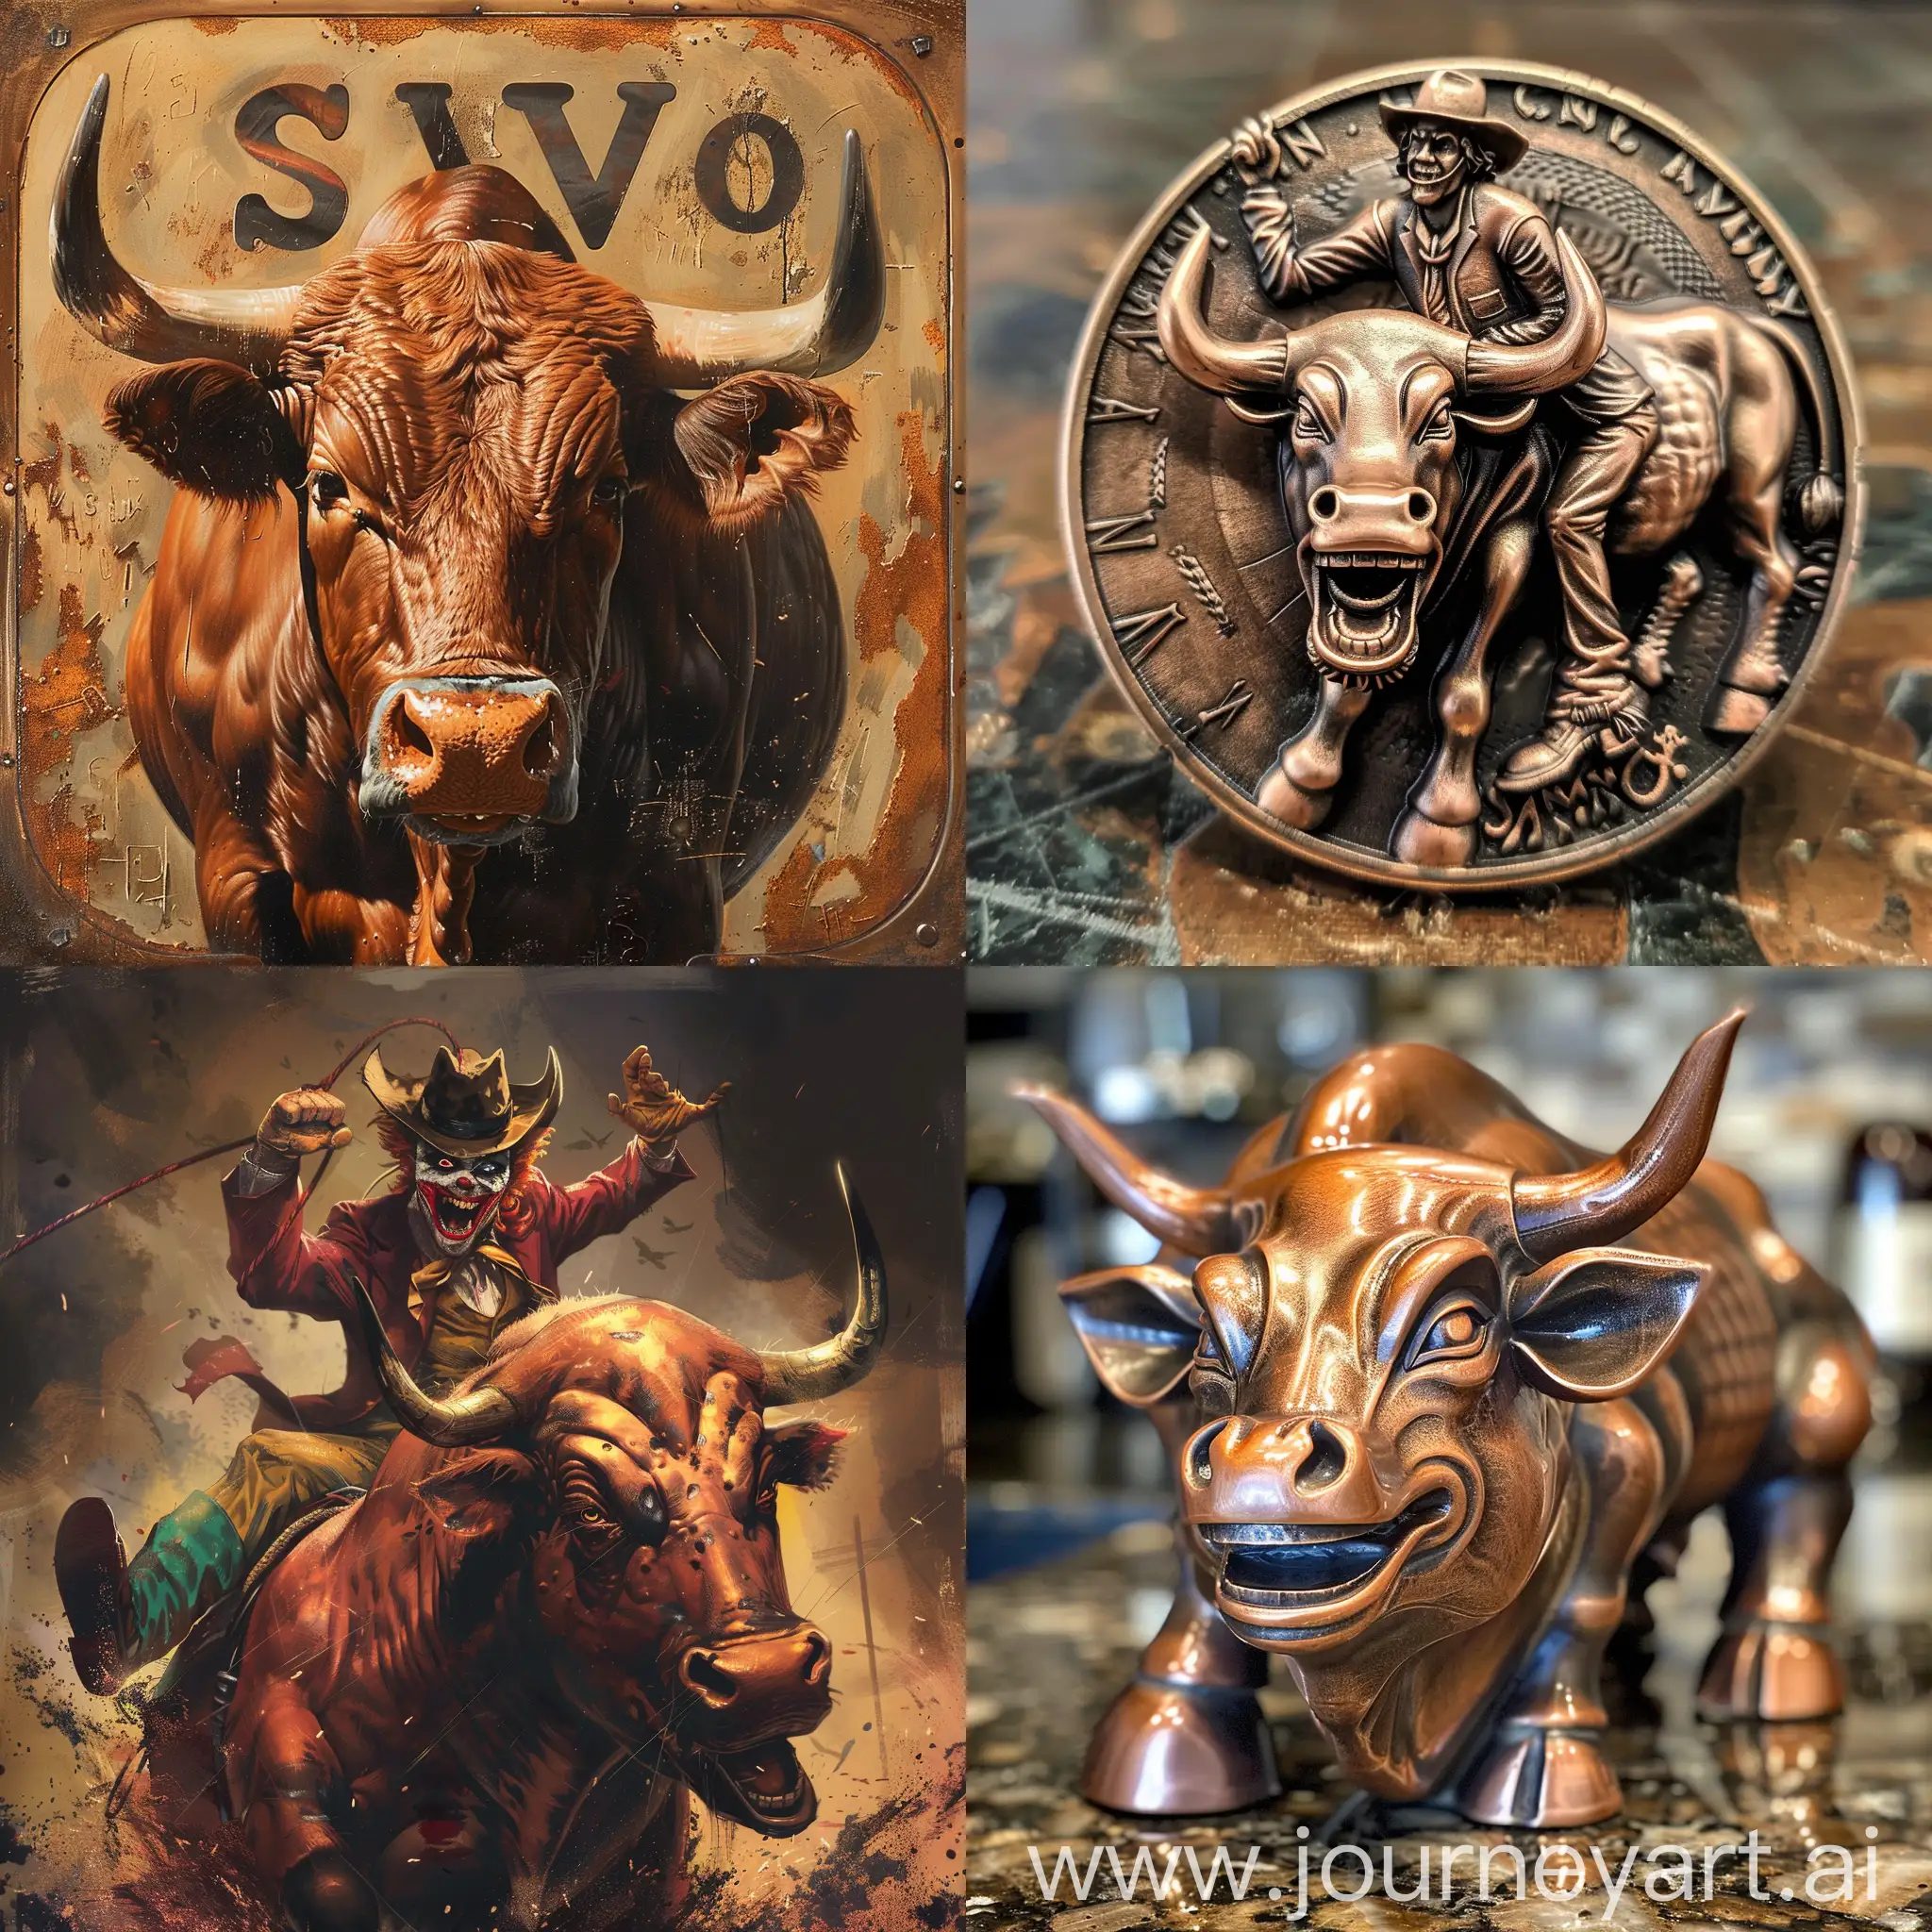 SVO joker on copper bull
